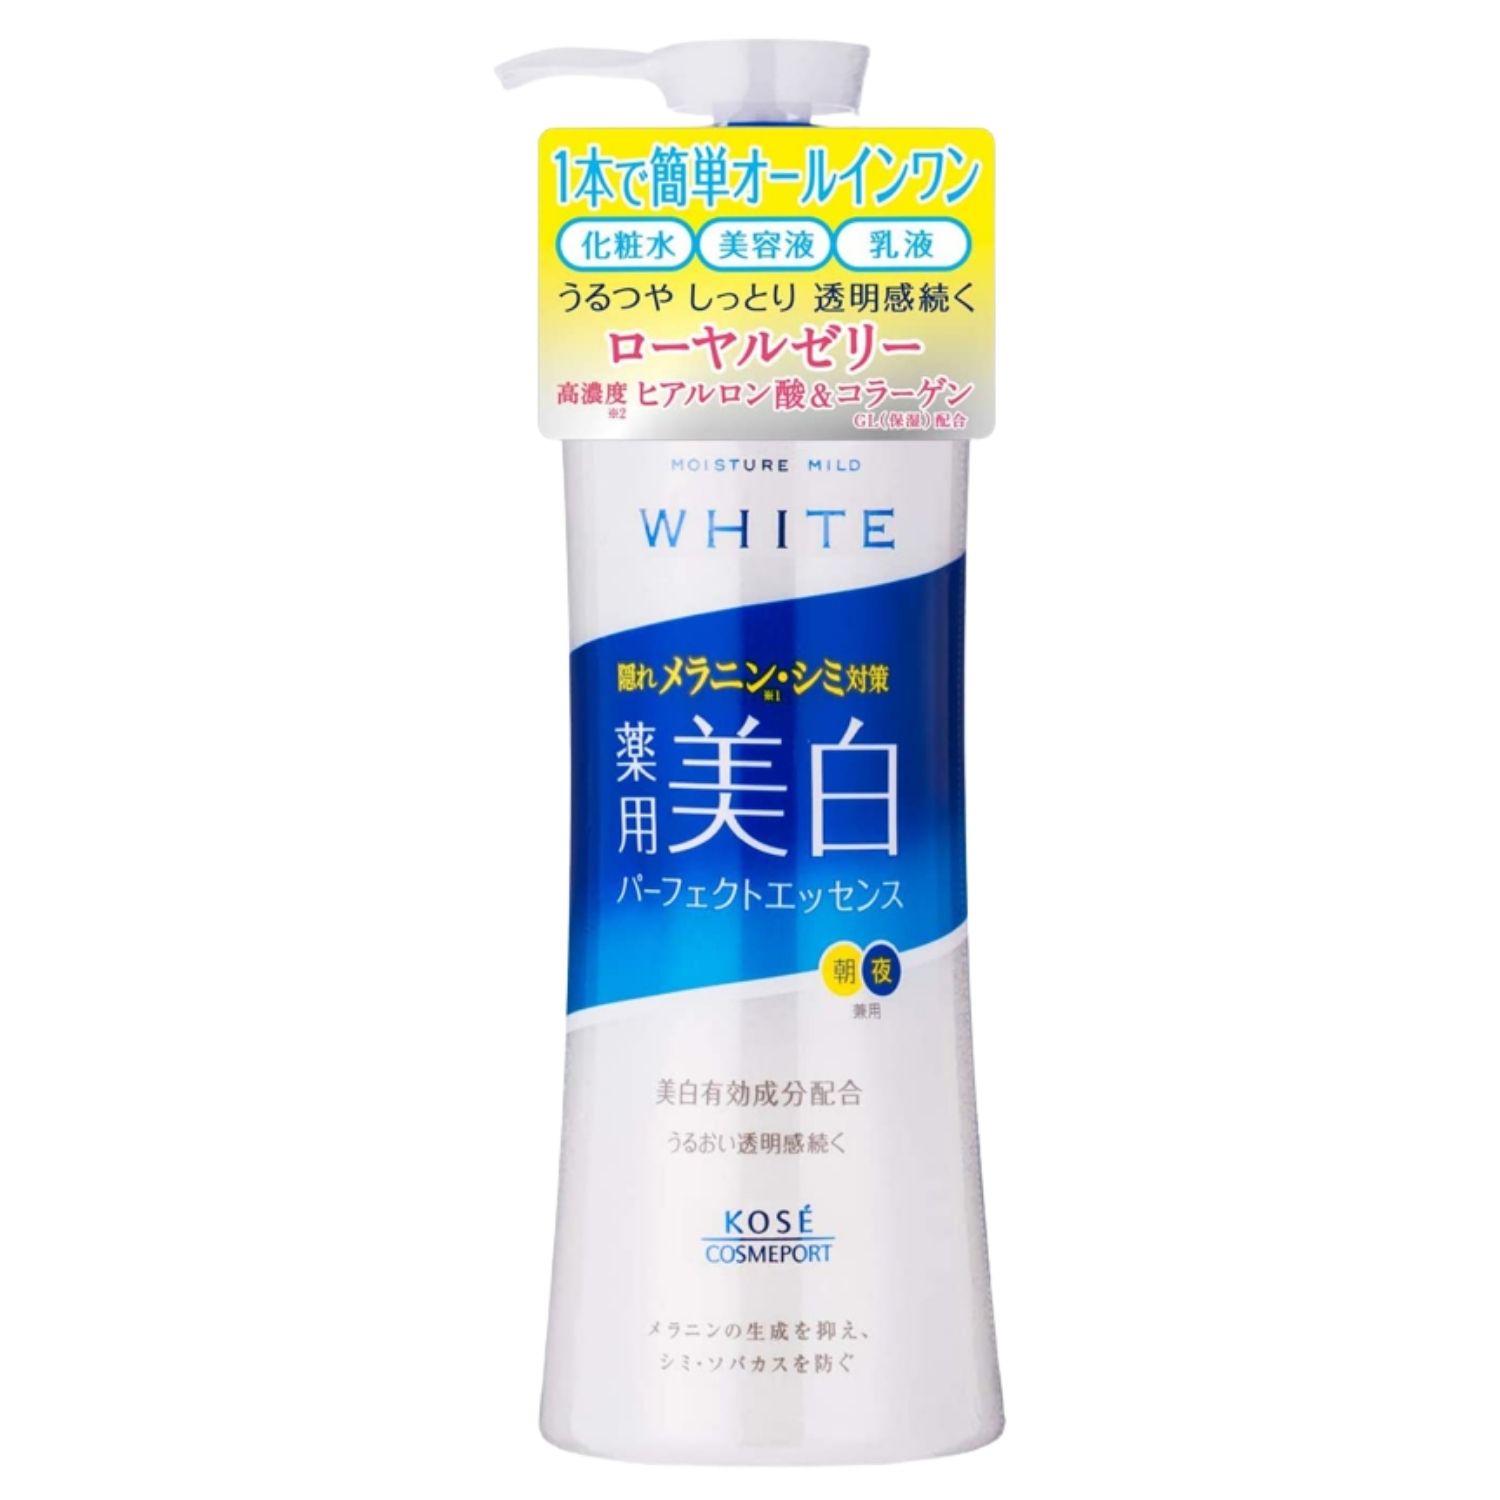 美白有効成分・高保湿成分配合で透明感のある肌を目指せる美白エッセンス